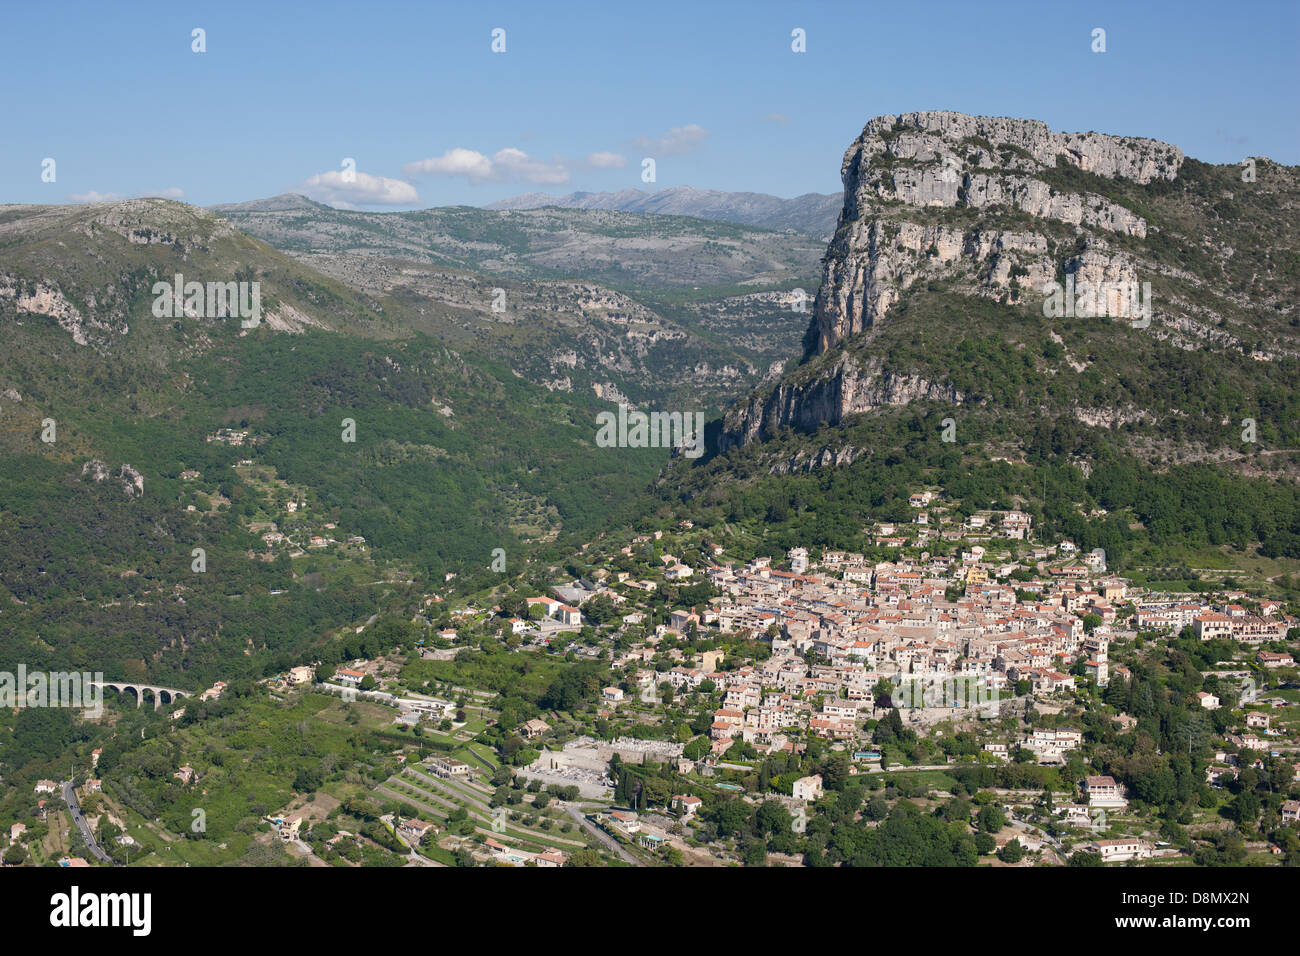 VISTA AEREA. Borgo medievale ai piedi di una massiccia scogliera alta 400 metri. Saint-Jeannet, Costa Azzurra, Alpes-Maritimes, Francia. Foto Stock